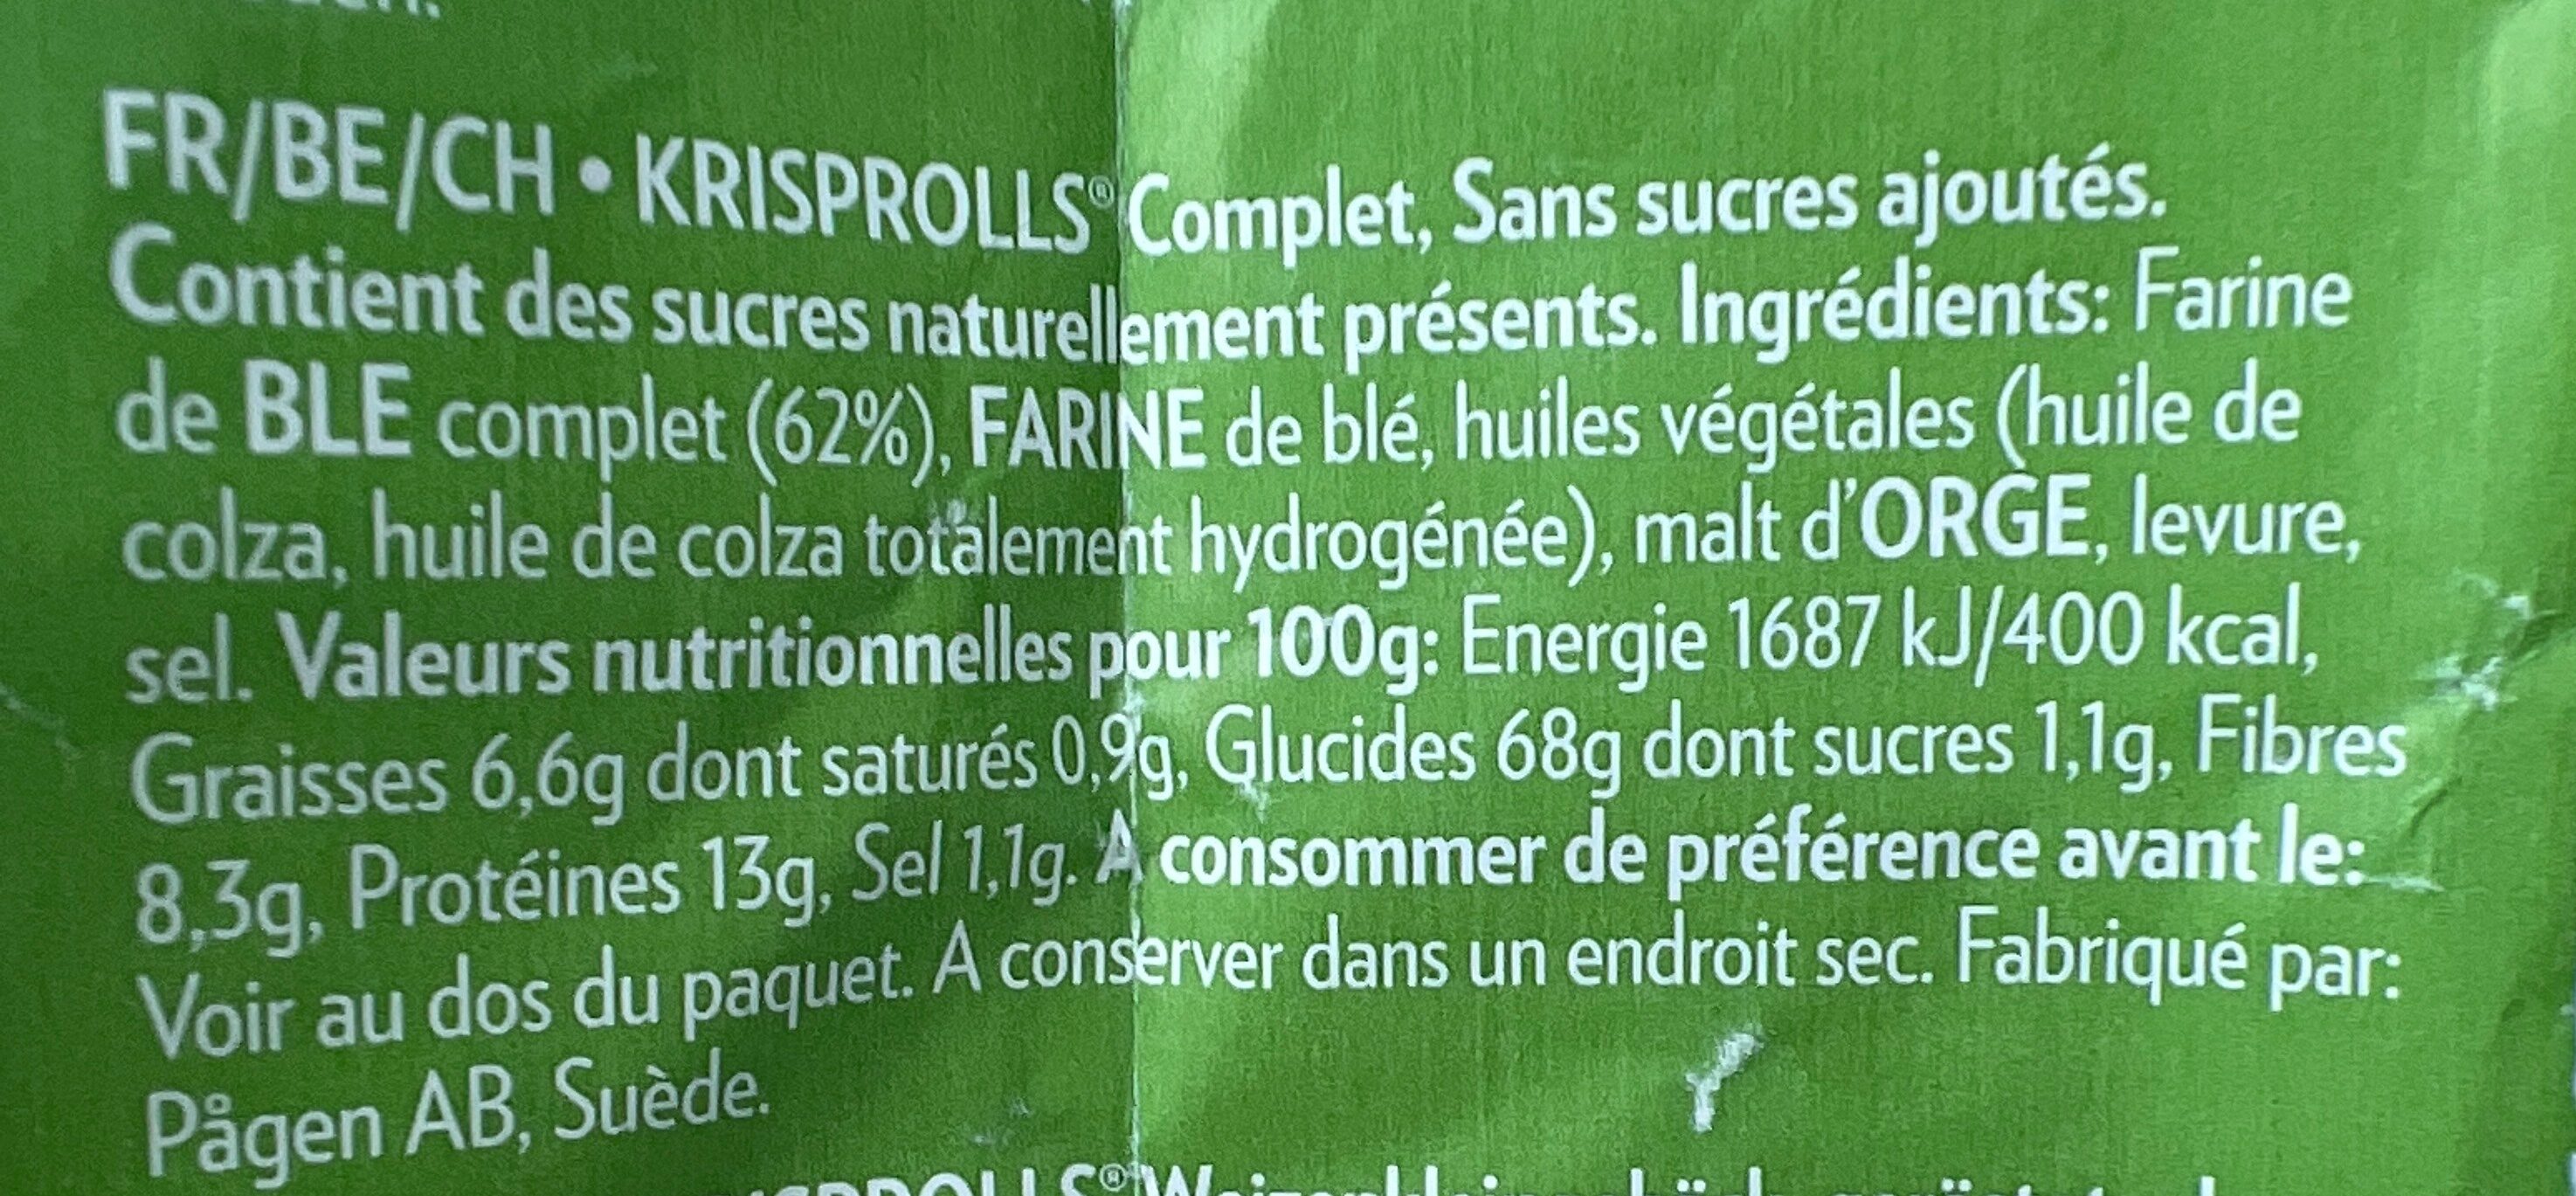 Krisprolls complets - Ingrédients